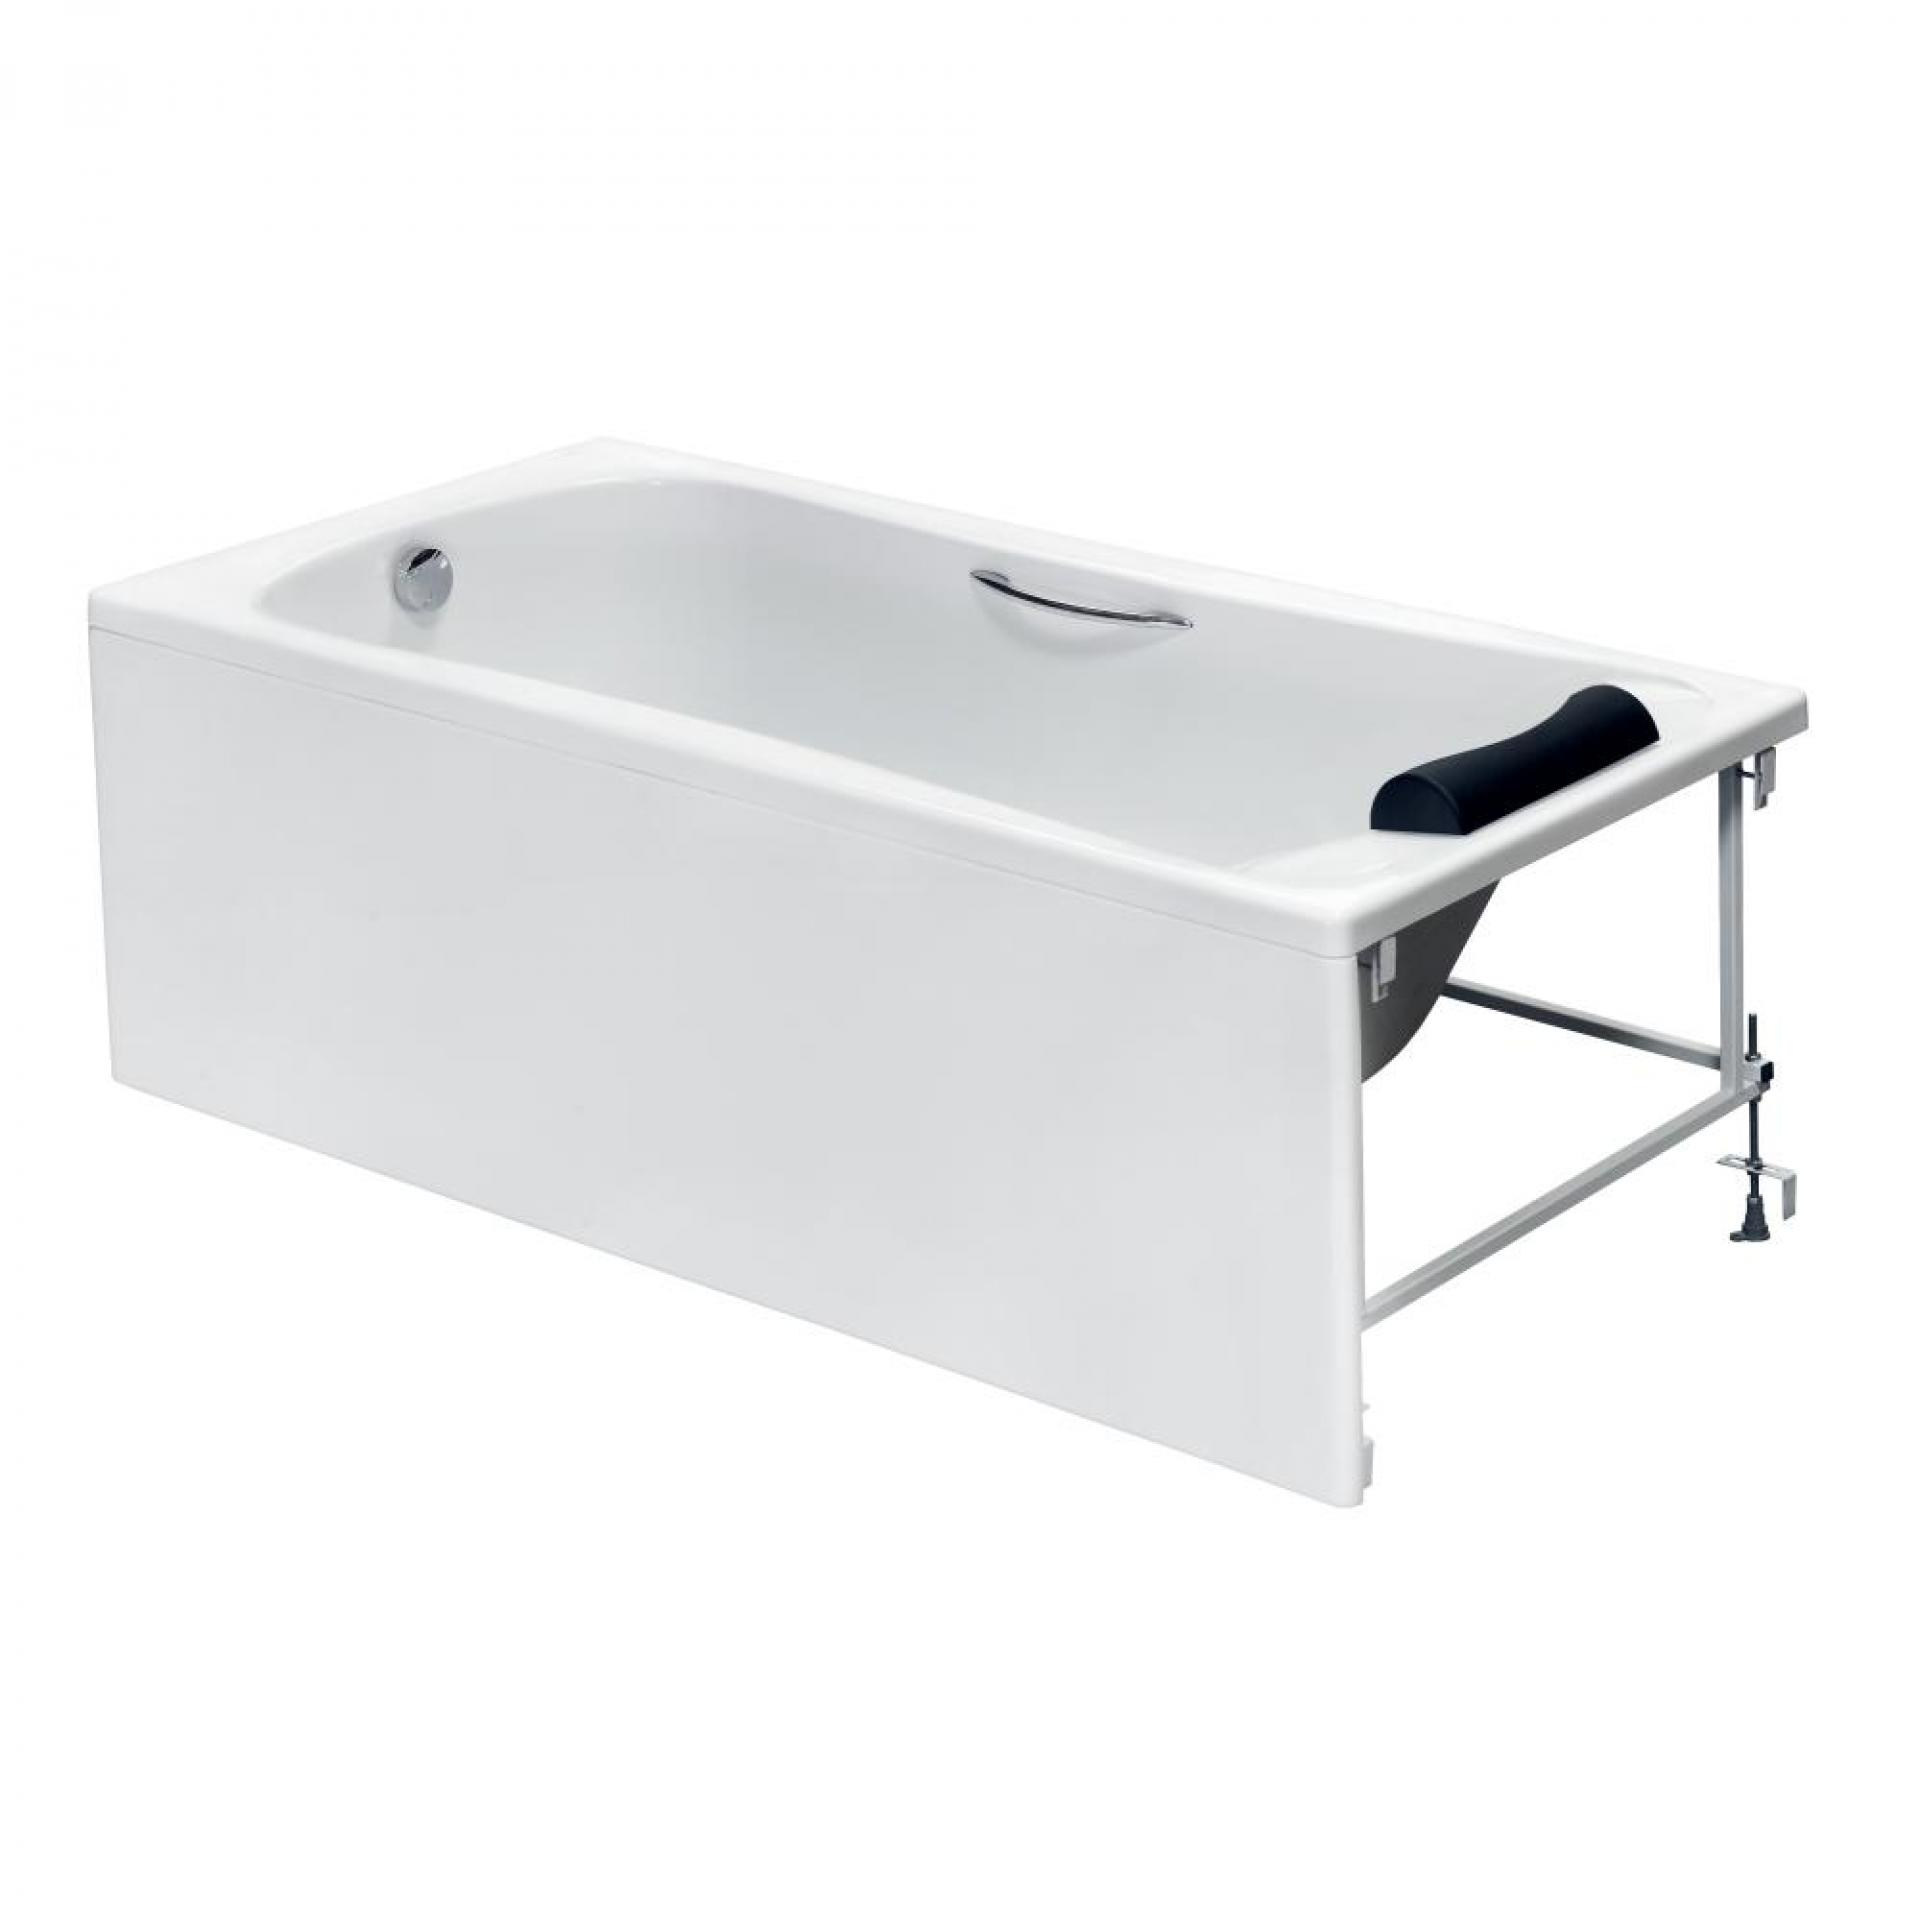 Фото: Комплект акриловая ванна Roca BeCool 190x90 + фронтальная панель + монтажный набор Roca в каталоге